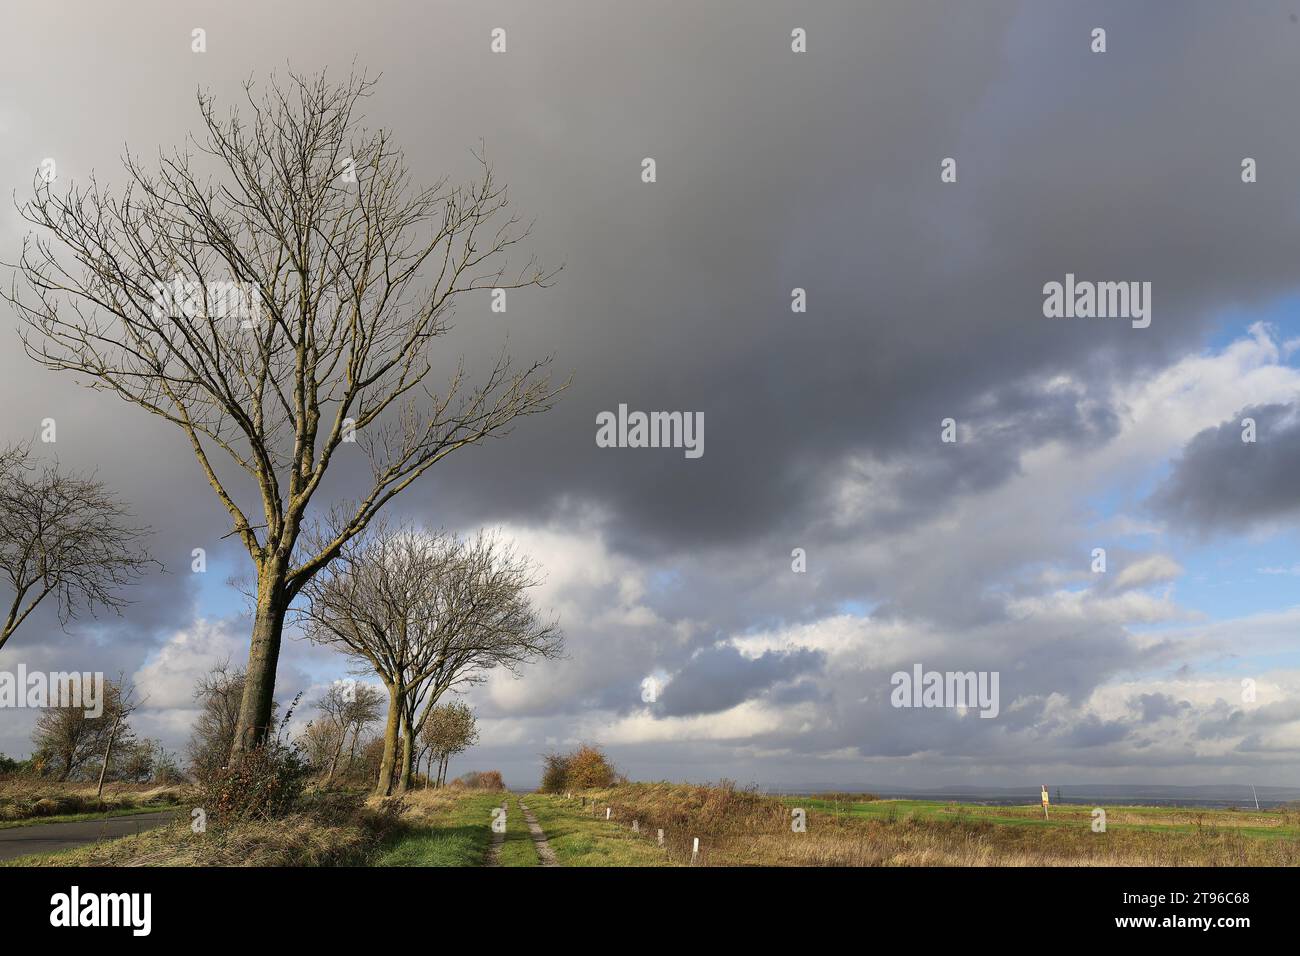 Nuvole scure che si spostano su un tracciato prato in un paesaggio autunnale, scatto grandangolare, spazio di copia Foto Stock